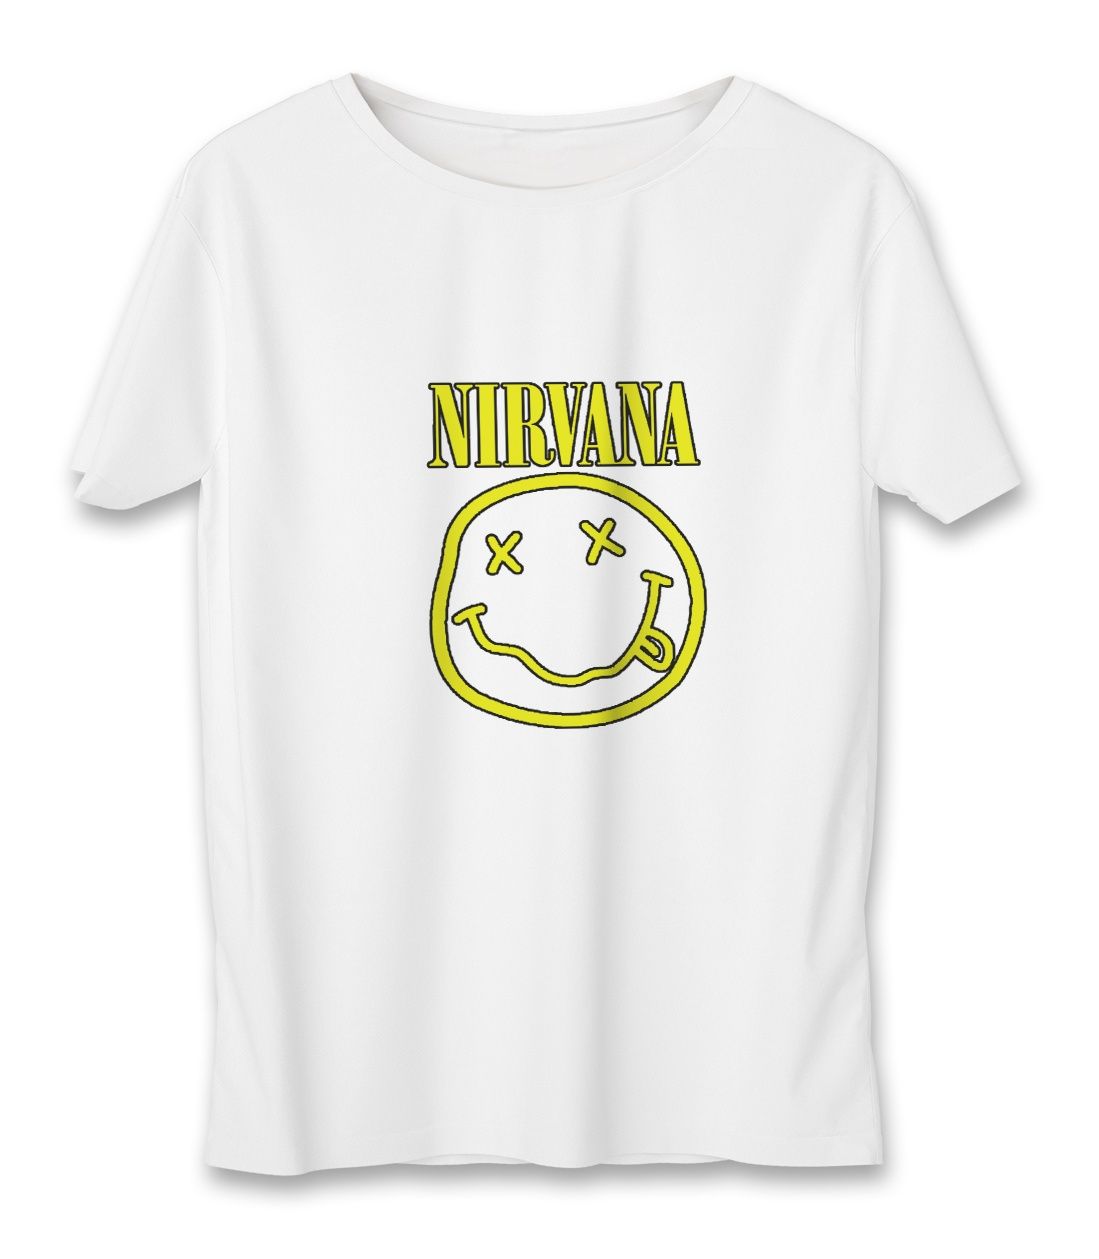 تی شرت زنانه به رسم طرح نیروانا کد 5542 -  - 1